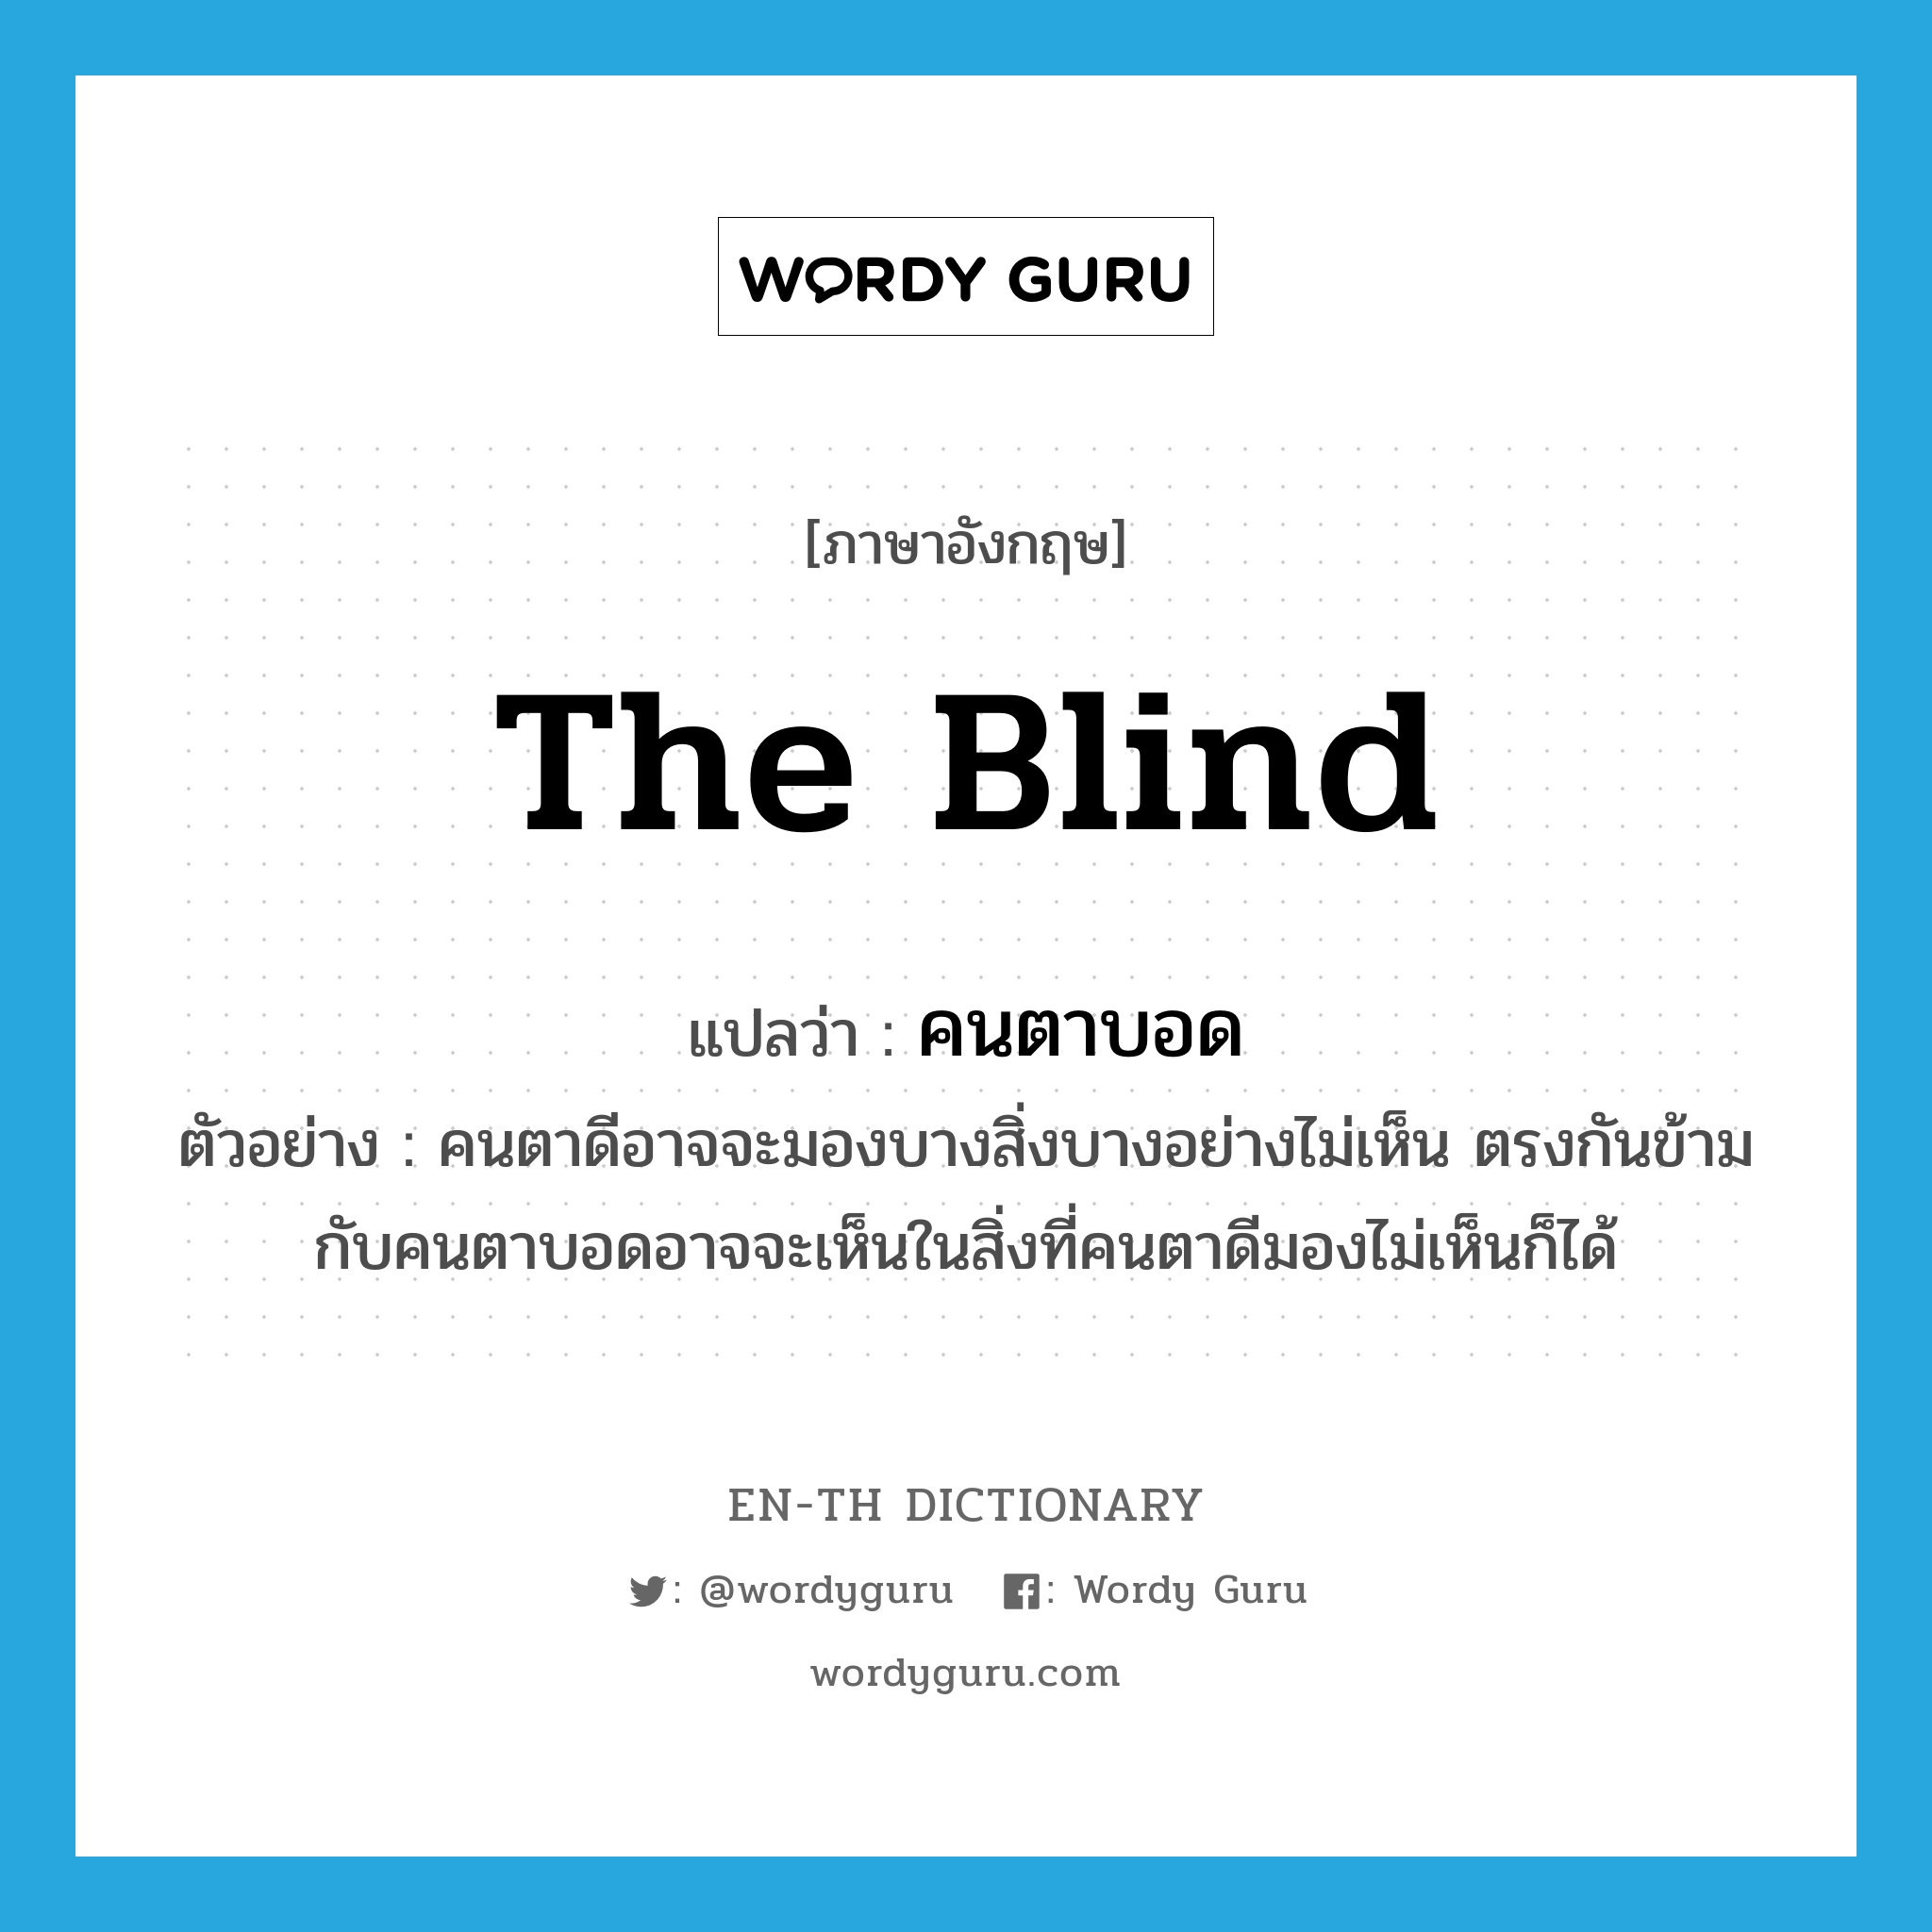 the blind แปลว่า?, คำศัพท์ภาษาอังกฤษ the blind แปลว่า คนตาบอด ประเภท N ตัวอย่าง คนตาดีอาจจะมองบางสิ่งบางอย่างไม่เห็น ตรงกันข้ามกับคนตาบอดอาจจะเห็นในสิ่งที่คนตาดีมองไม่เห็นก็ได้ หมวด N